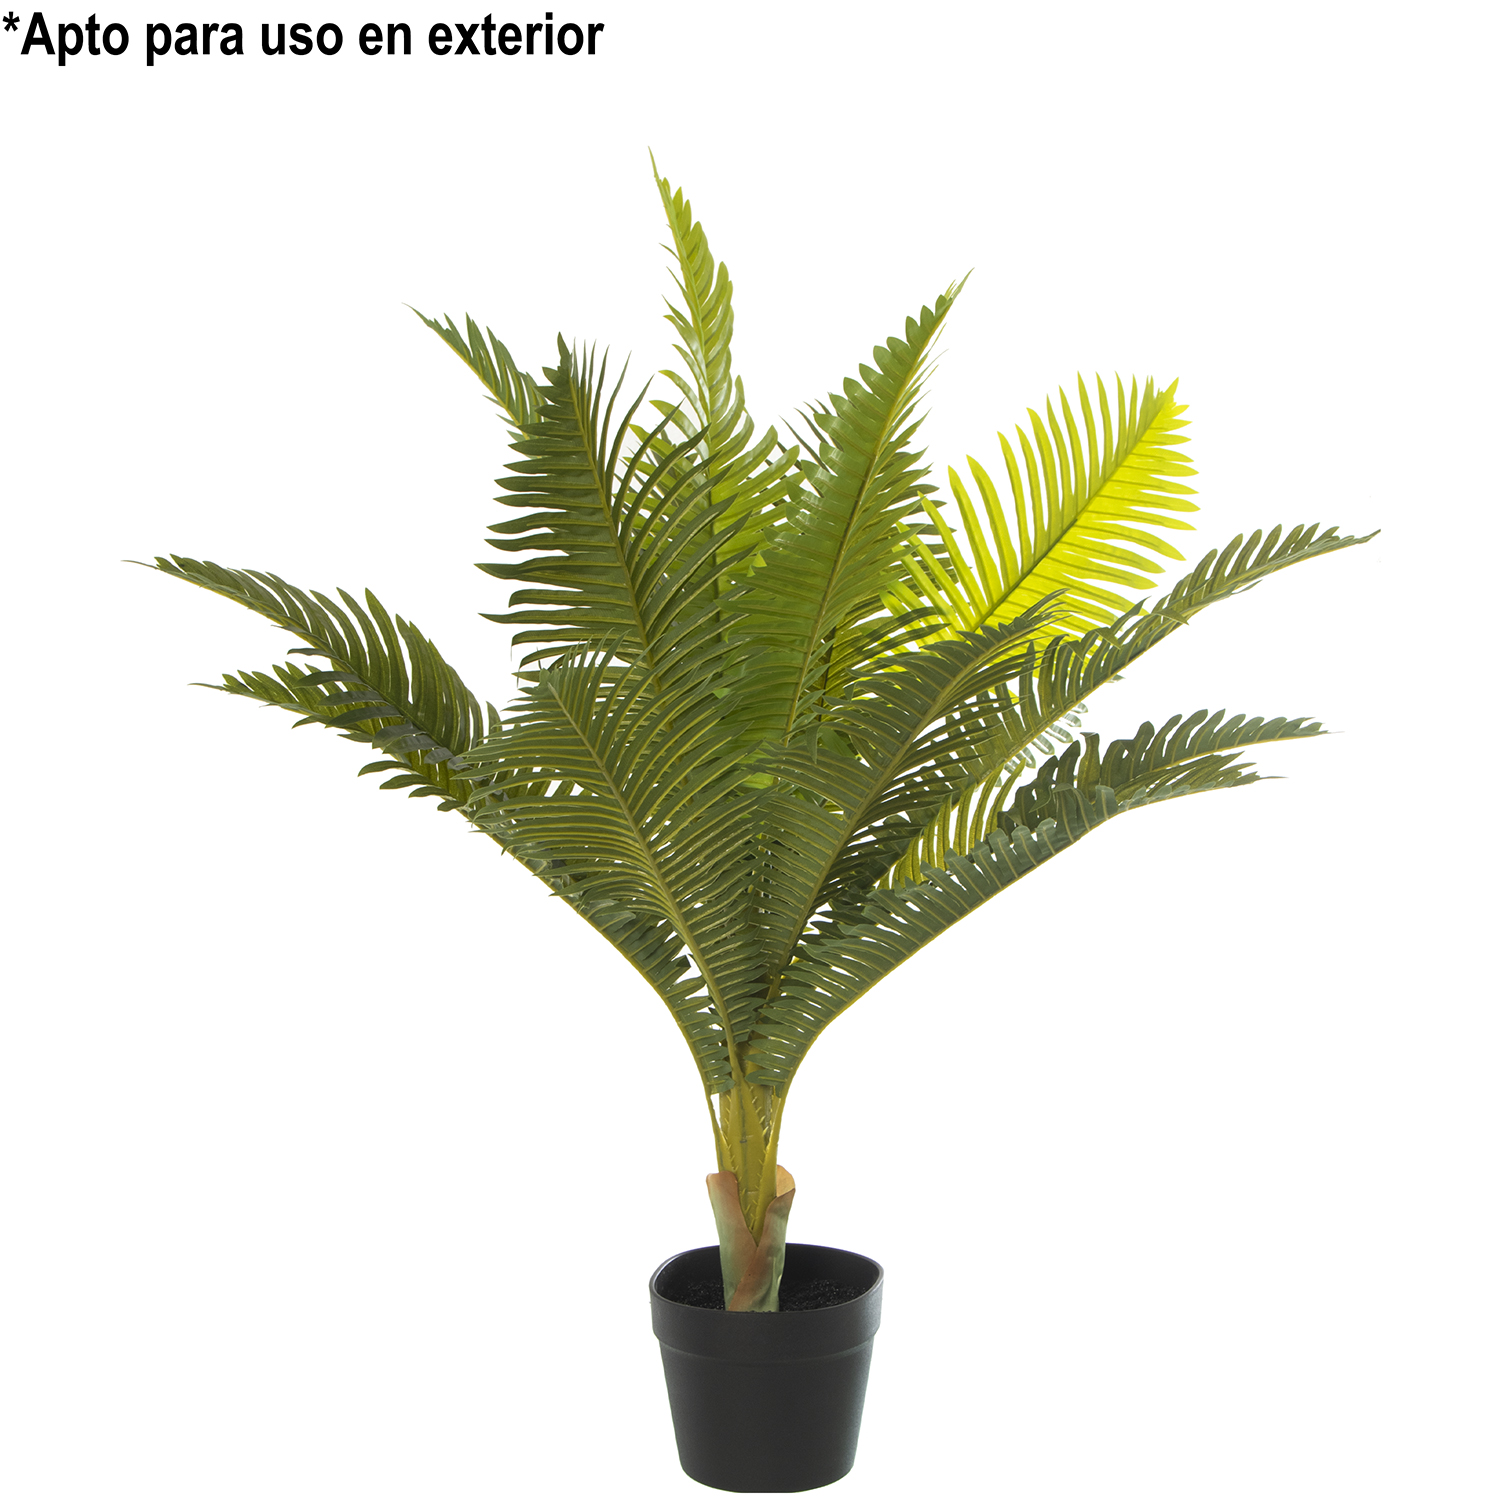 33983-planta-artificial-palmera-80-cm.gif